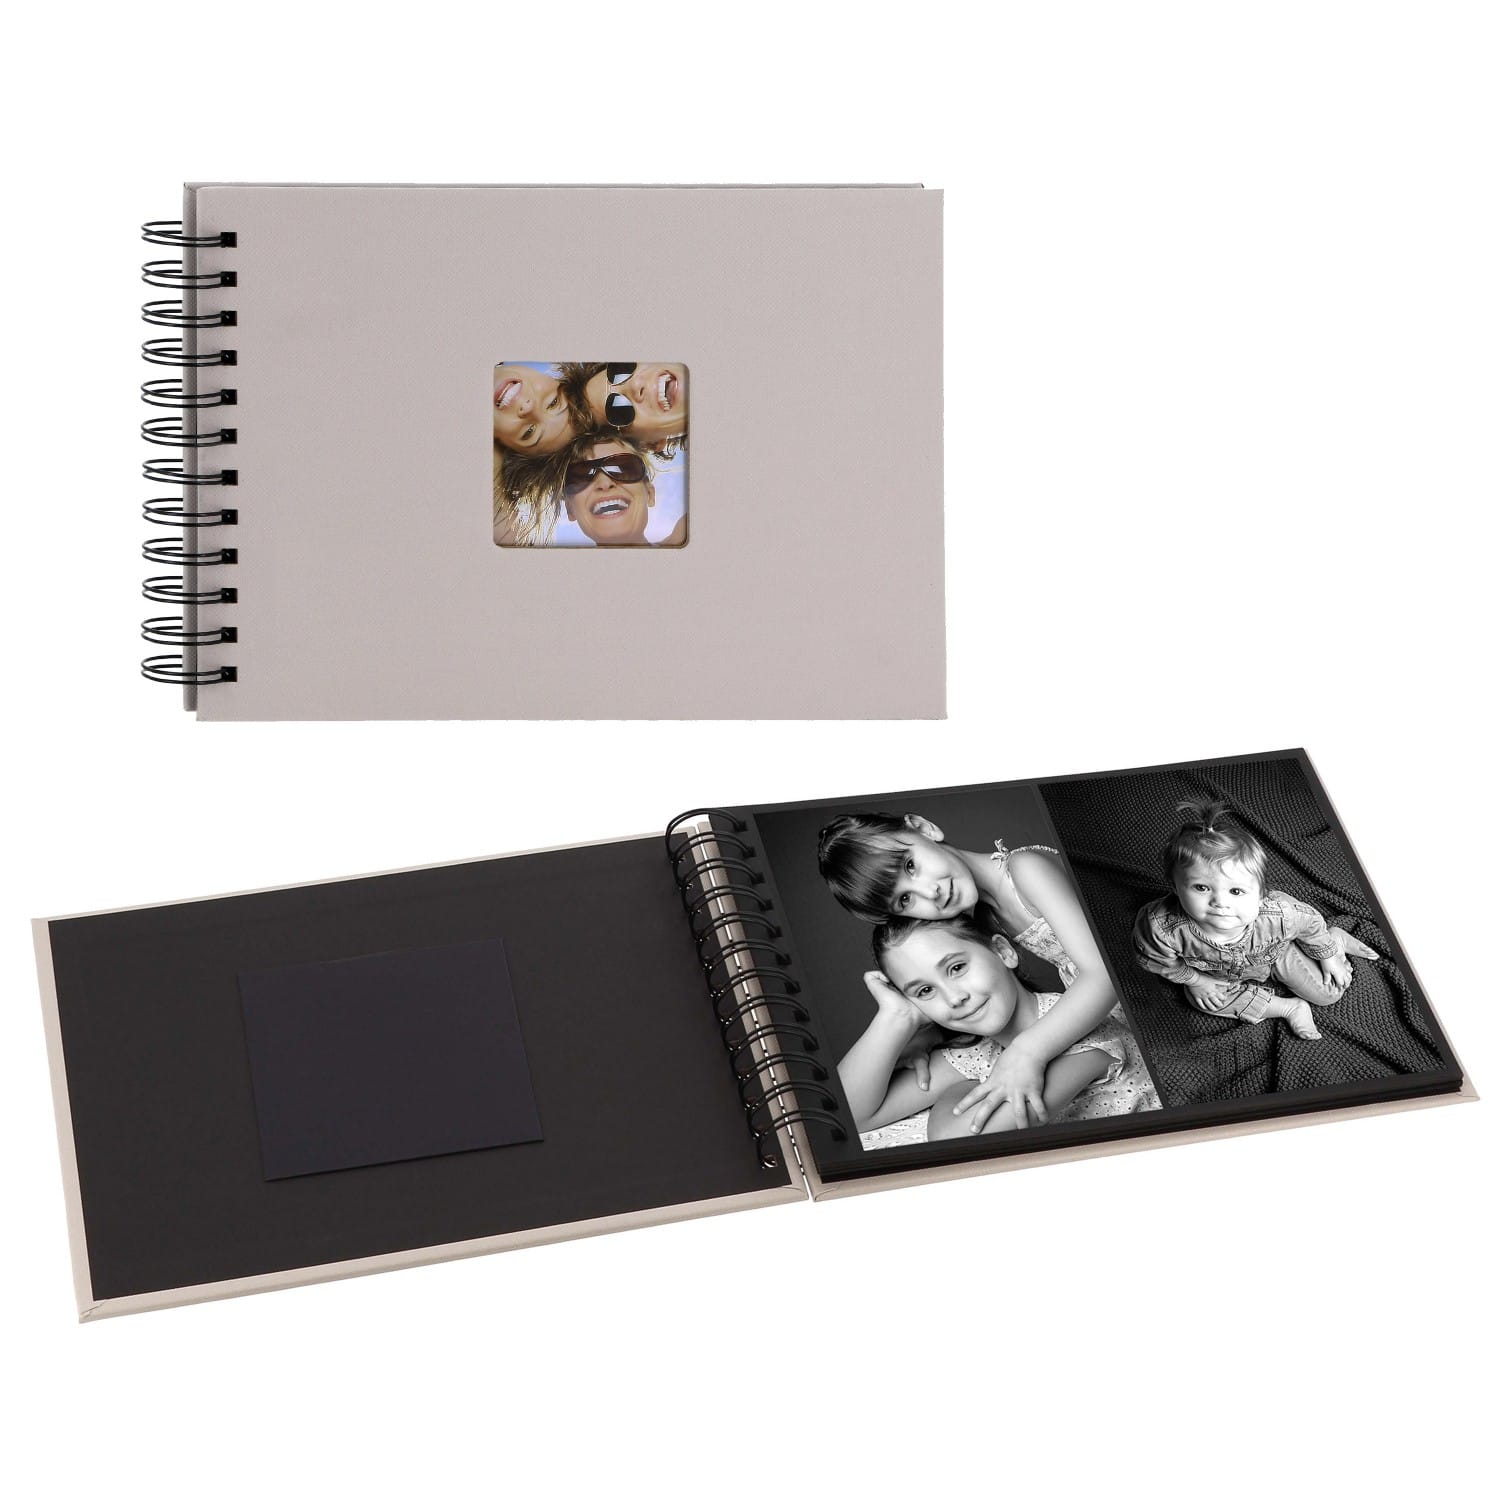 Mini Album Walther Design Traditionnel Fun 20 Pages Noires 40 Photos Couverture Grise